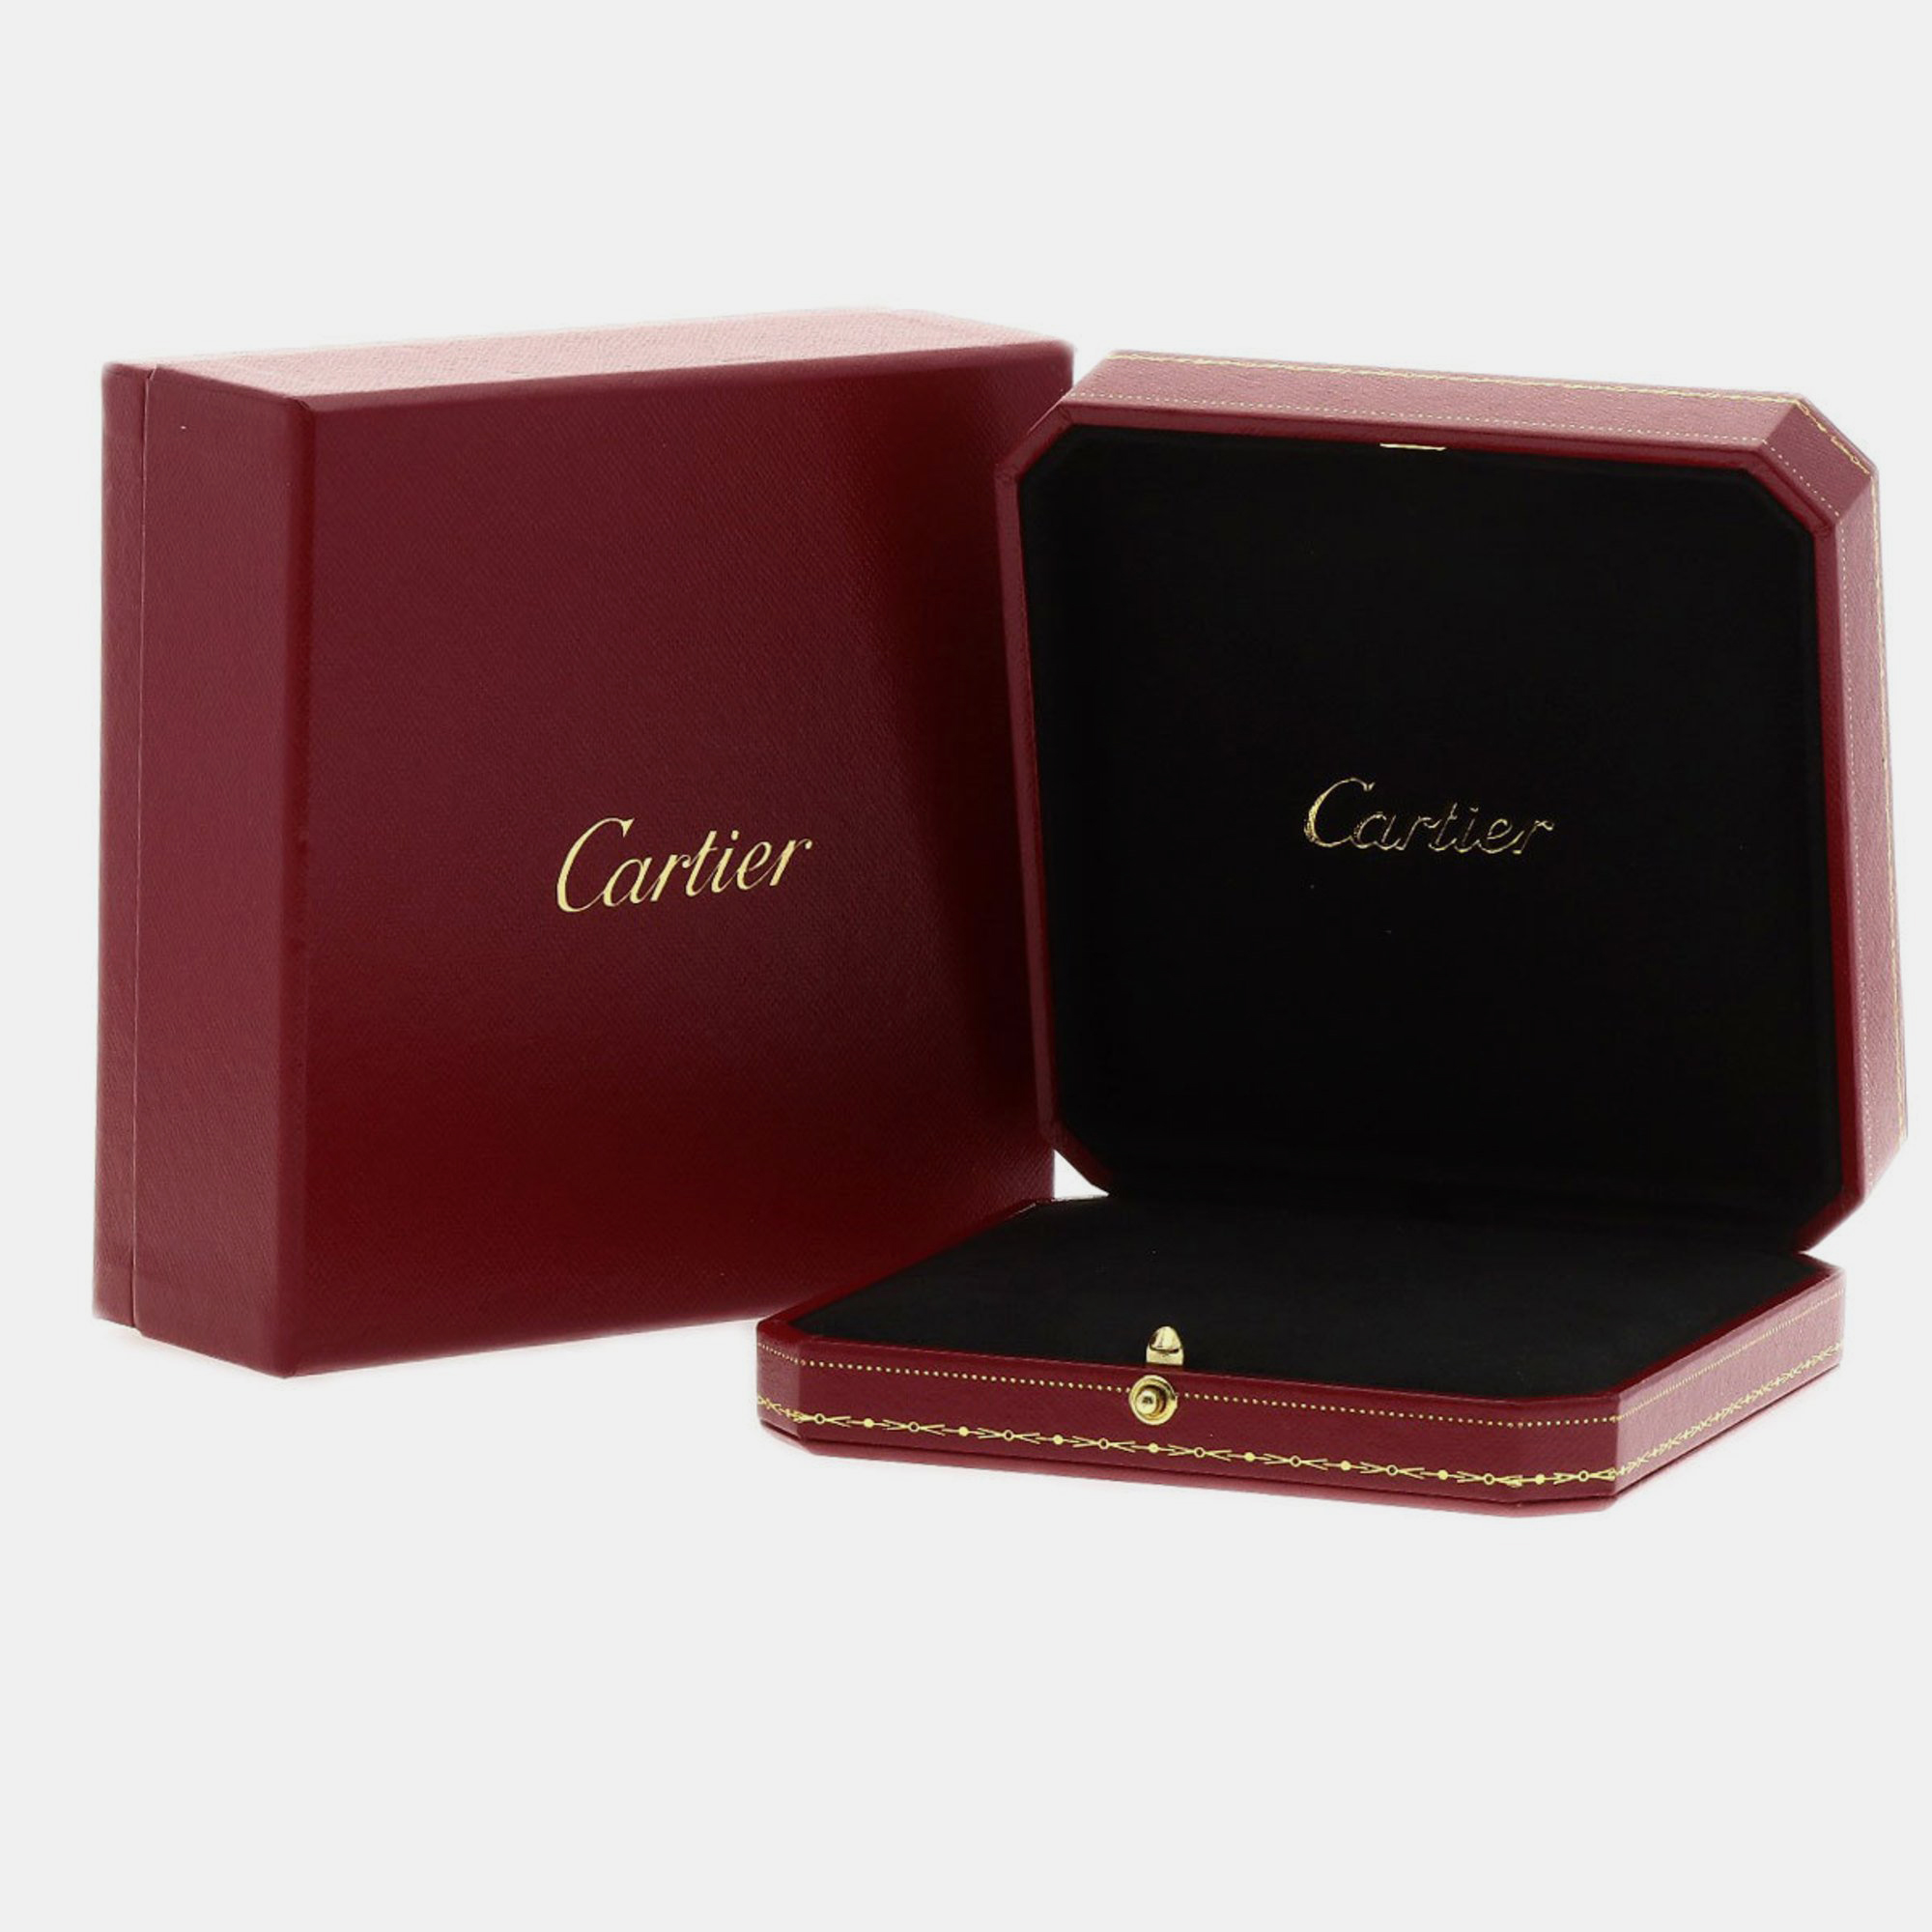 Cartier C De Cartier 18K White Gold Amethyst Necklace